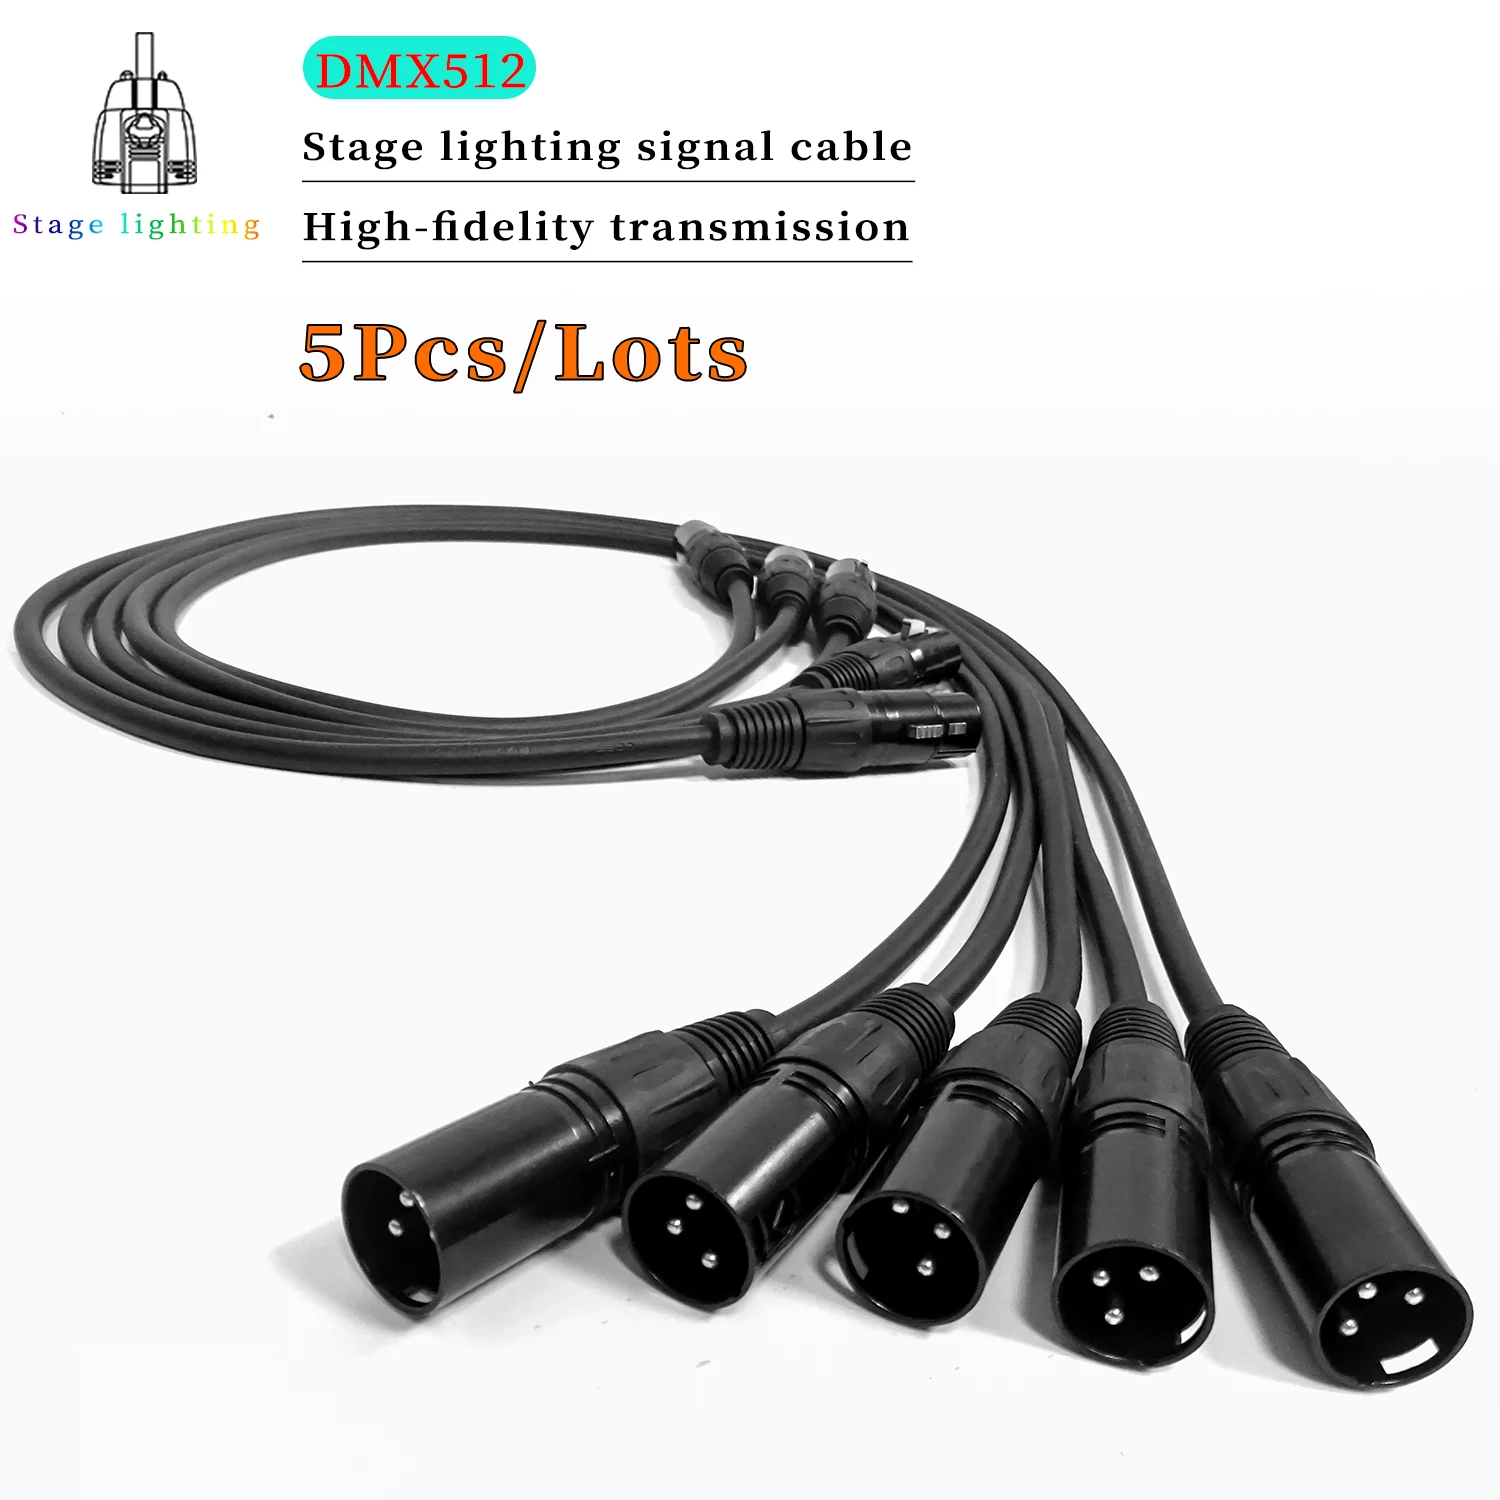 

5Pcs/lots Led Par Light Connection Cable 3-PIN DMX Cable 1M/2M/3M/4M/5M/6M/7M/8M/9M/10M DMX Signal Line Used For Stage Light